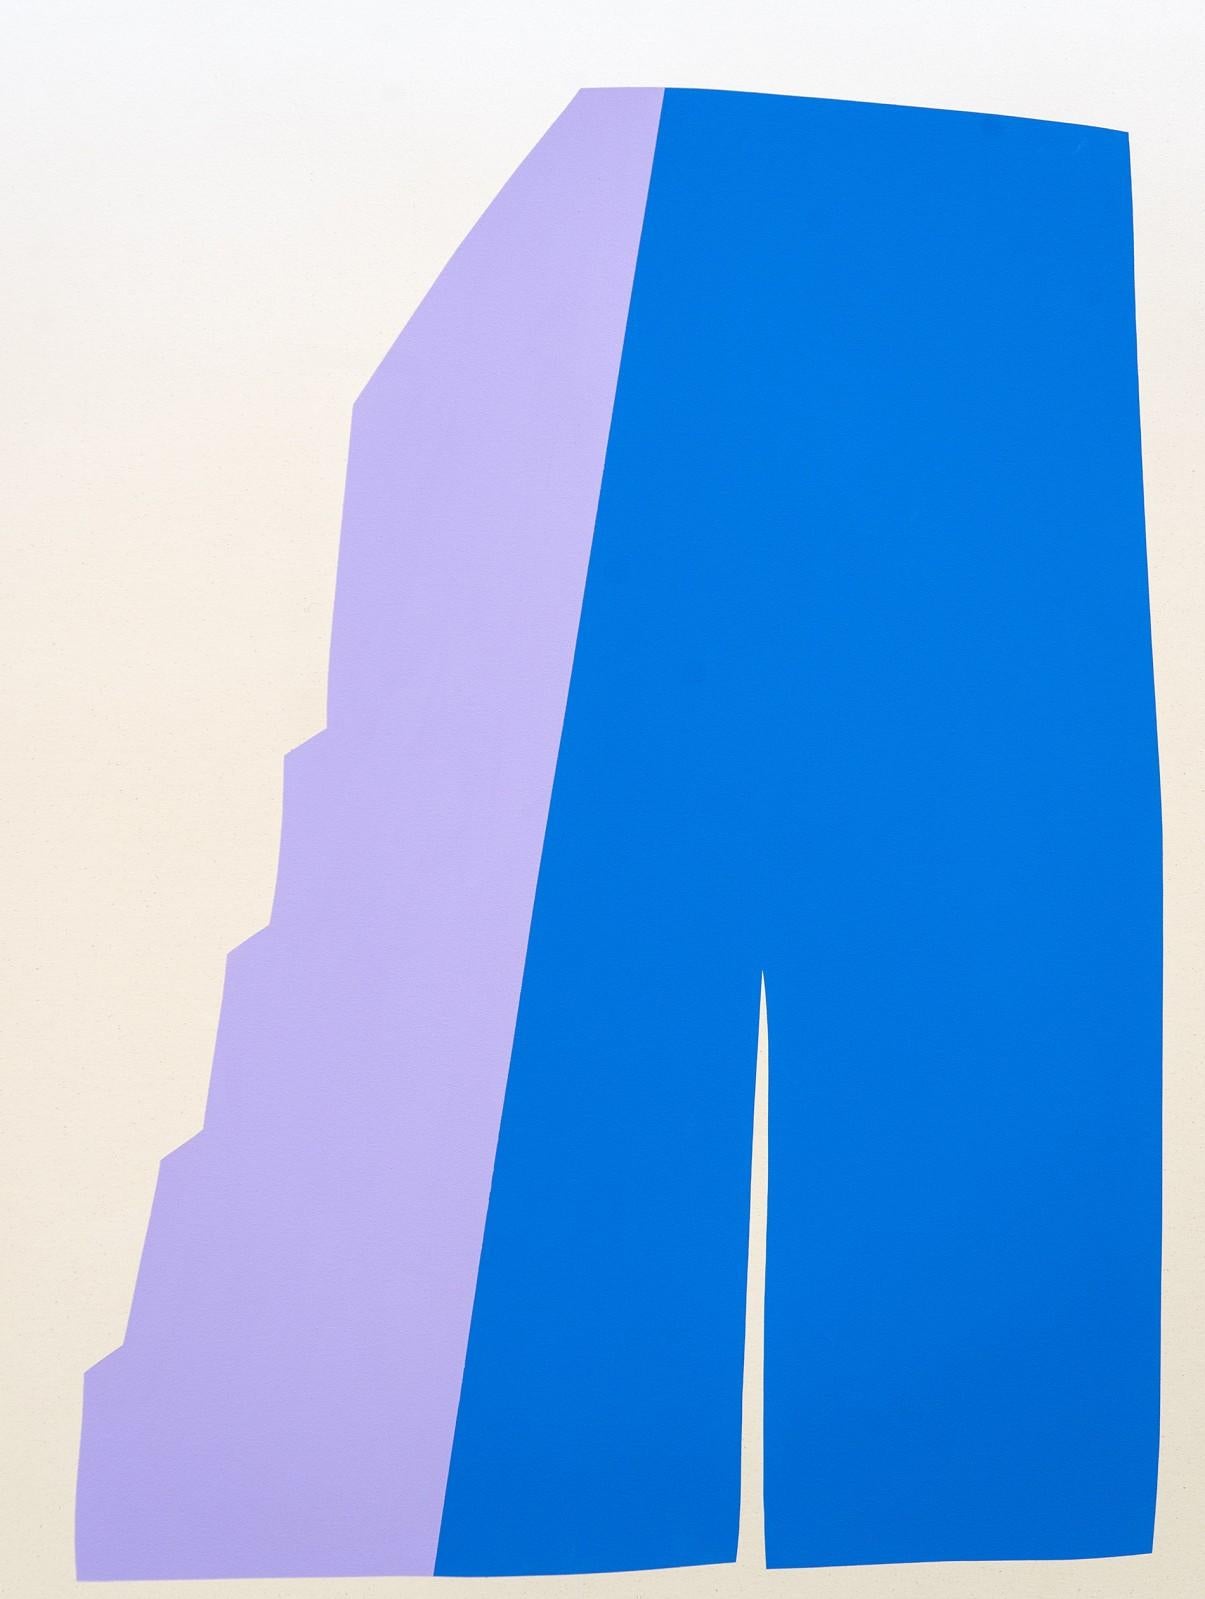 Großes blaues und lavendelfarbenes Gemälde mit verblüffender Sonne - farbenfrohes, abstraktes Gemälde, Acryl auf Leinwand (Violett), Abstract Painting, von Aron Hill